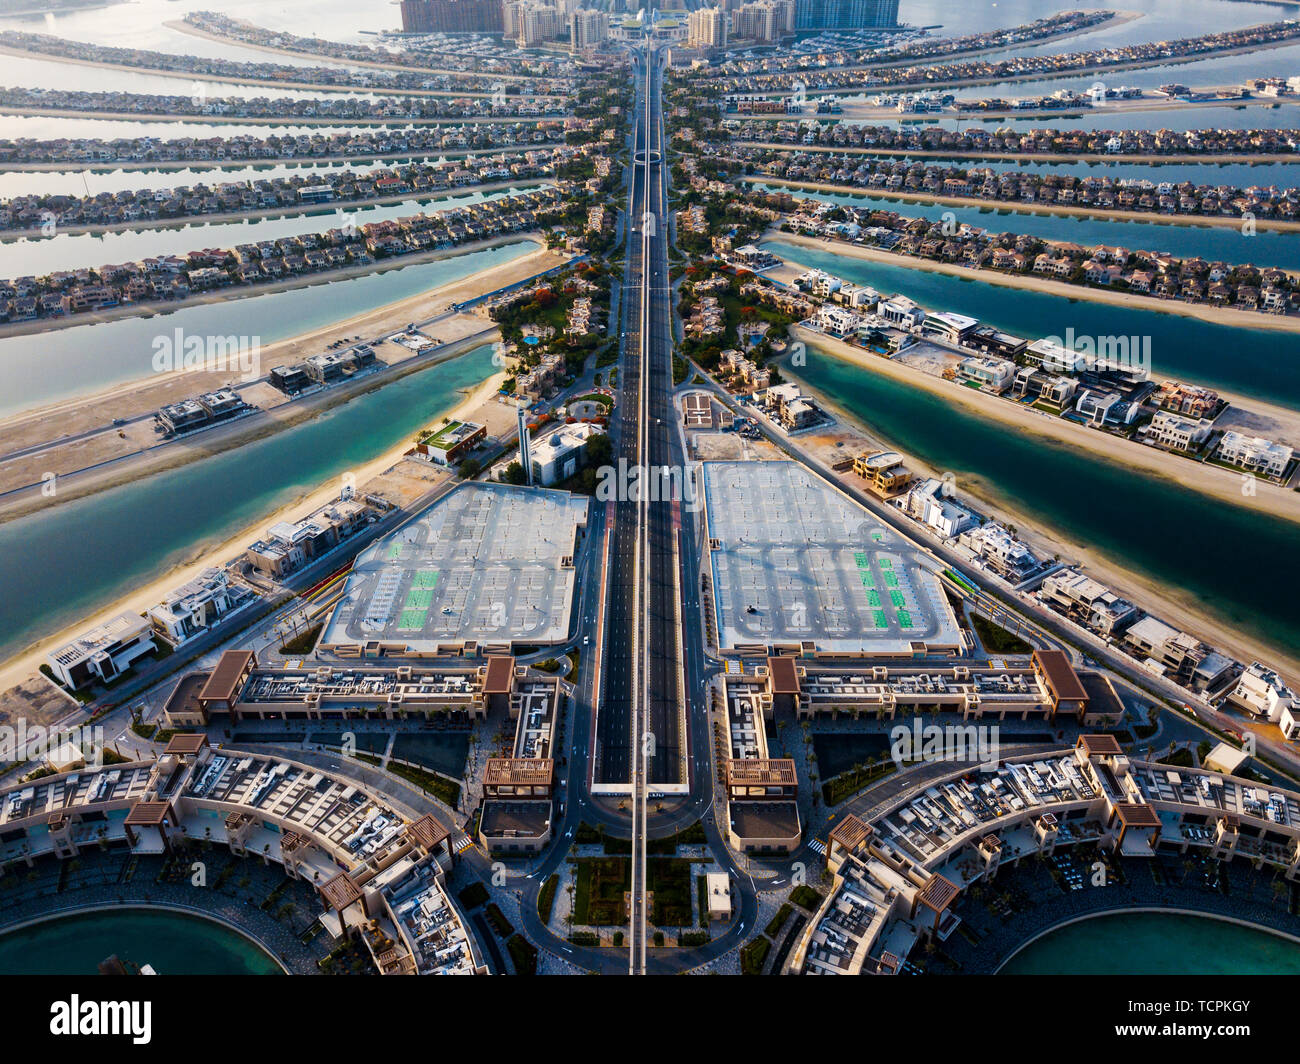 Das Palm Island mit luxuriösen Villen und Hotels in Dubai, Luftaufnahme Stockfoto